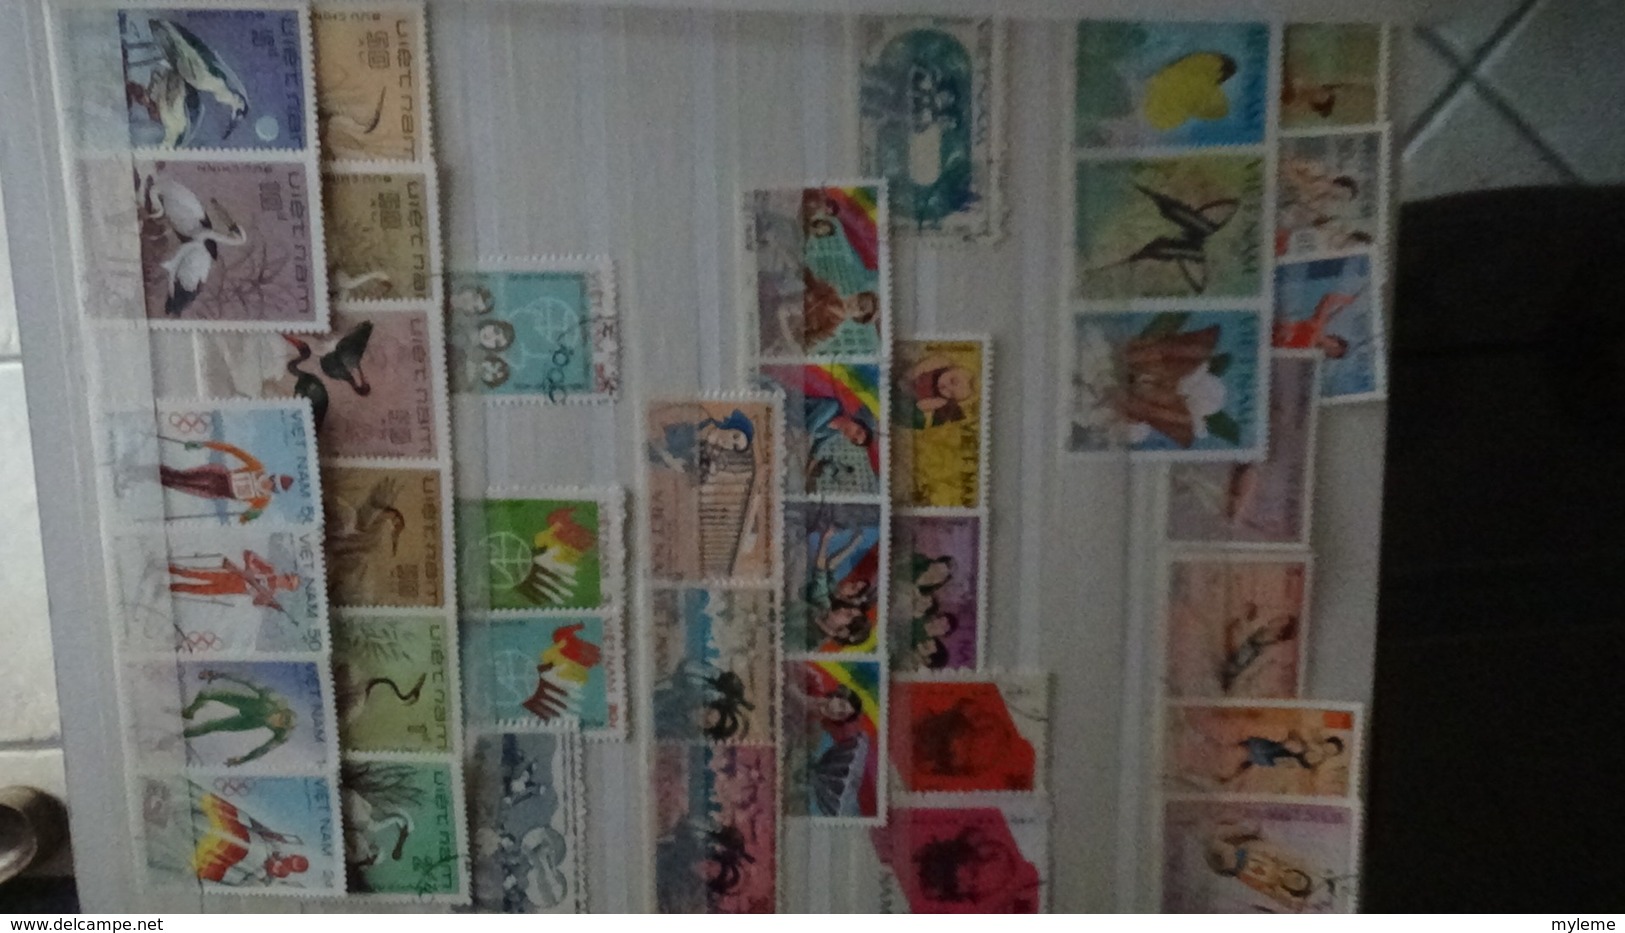 Collection timbres et blocs oblitérés et ** du Viet Nam. Pas commun !!!